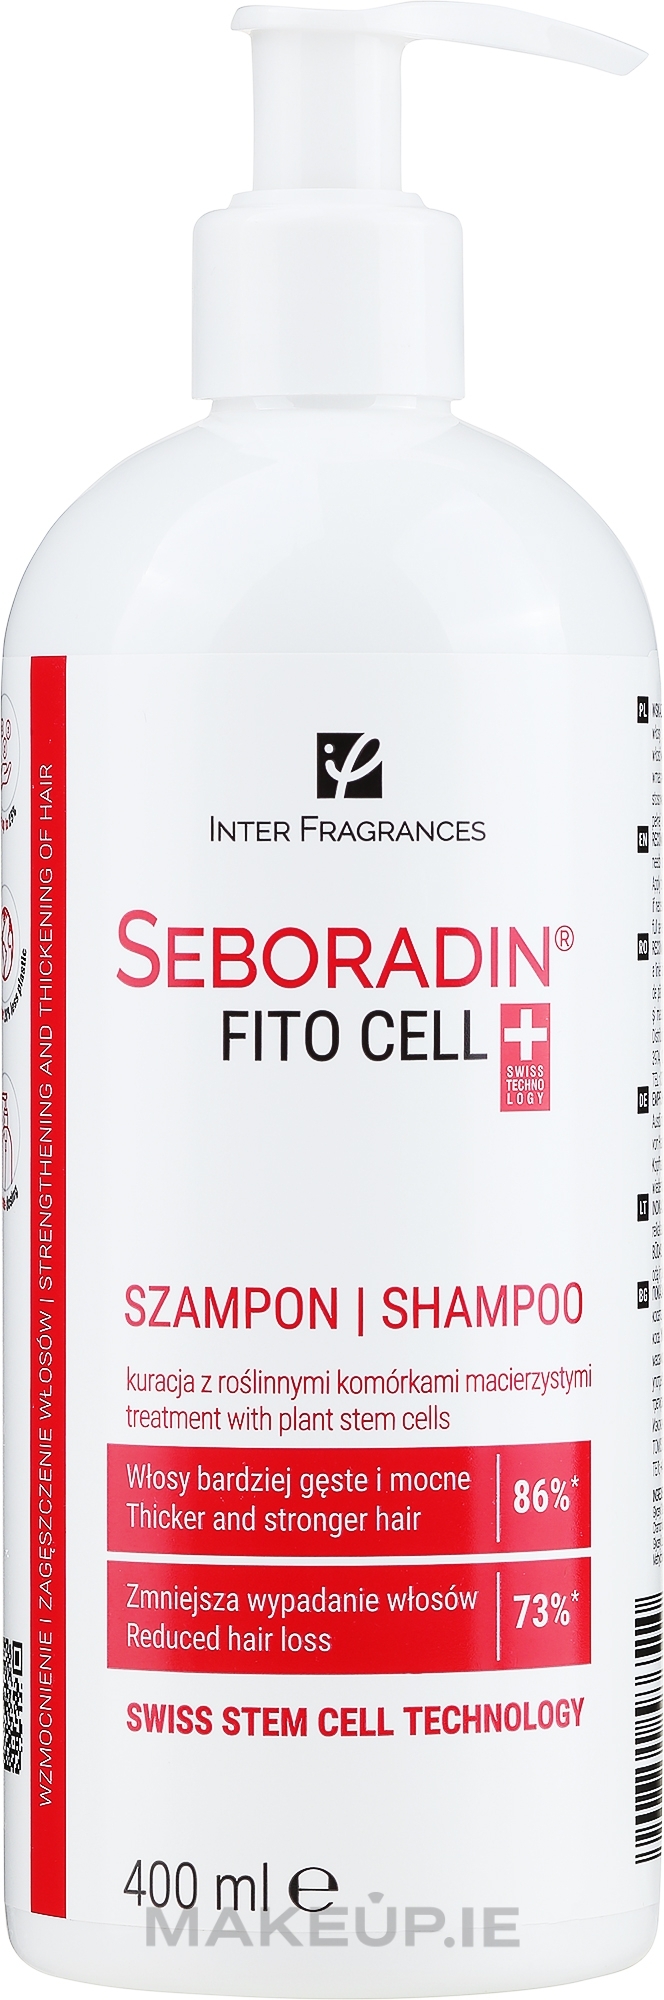 seboradin szampon fitocell